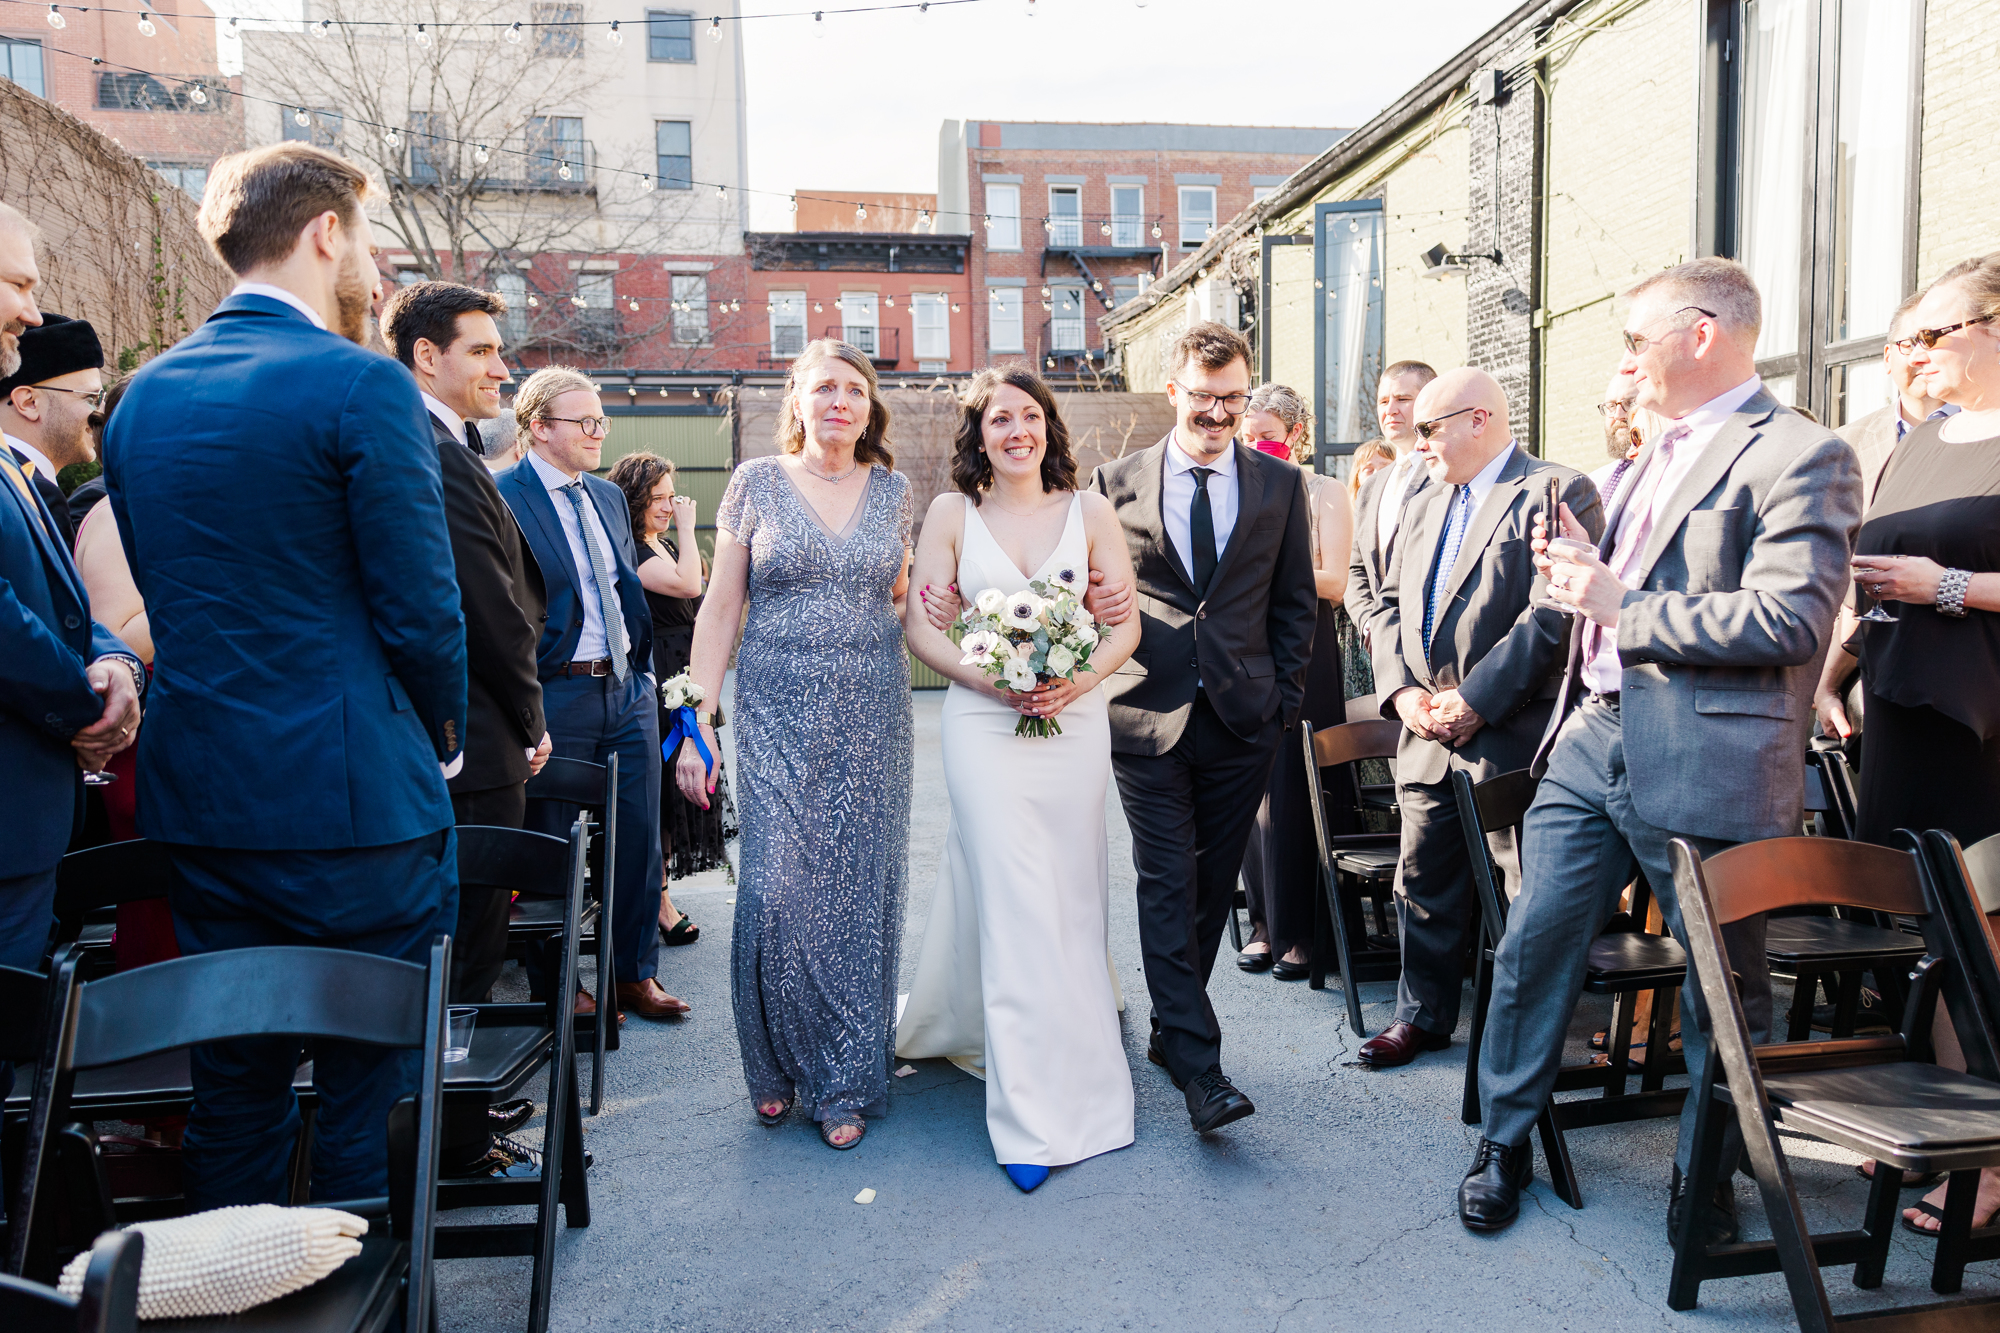 Enchanting Spring Wedding Photos at The Green Building in Brooklyn NY